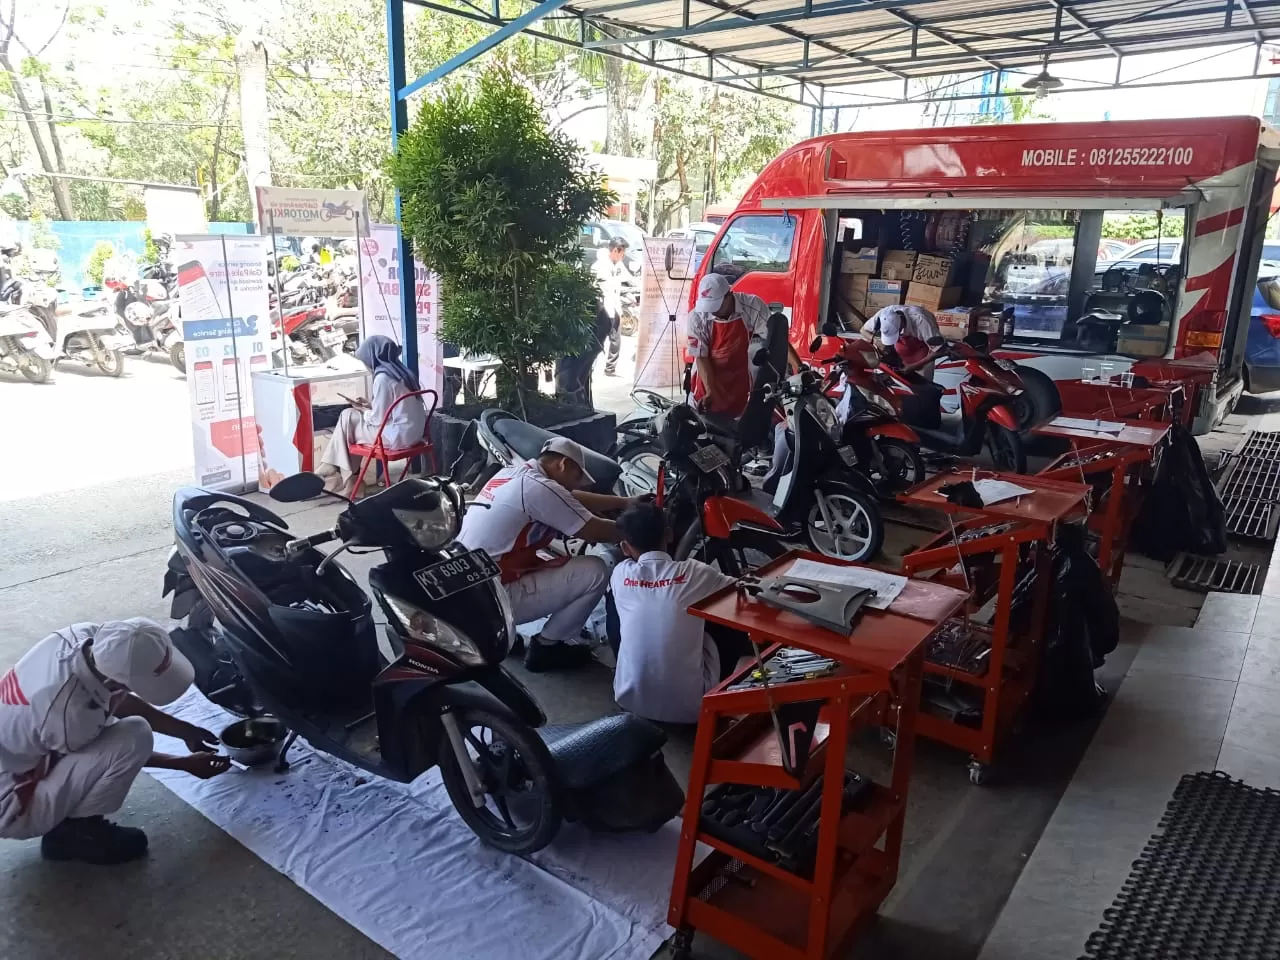 SERVICE GRATIS. Sebanyak 70 motor karyawan media di Samarinda mendapatkan service dan ganti oli gratis. IST